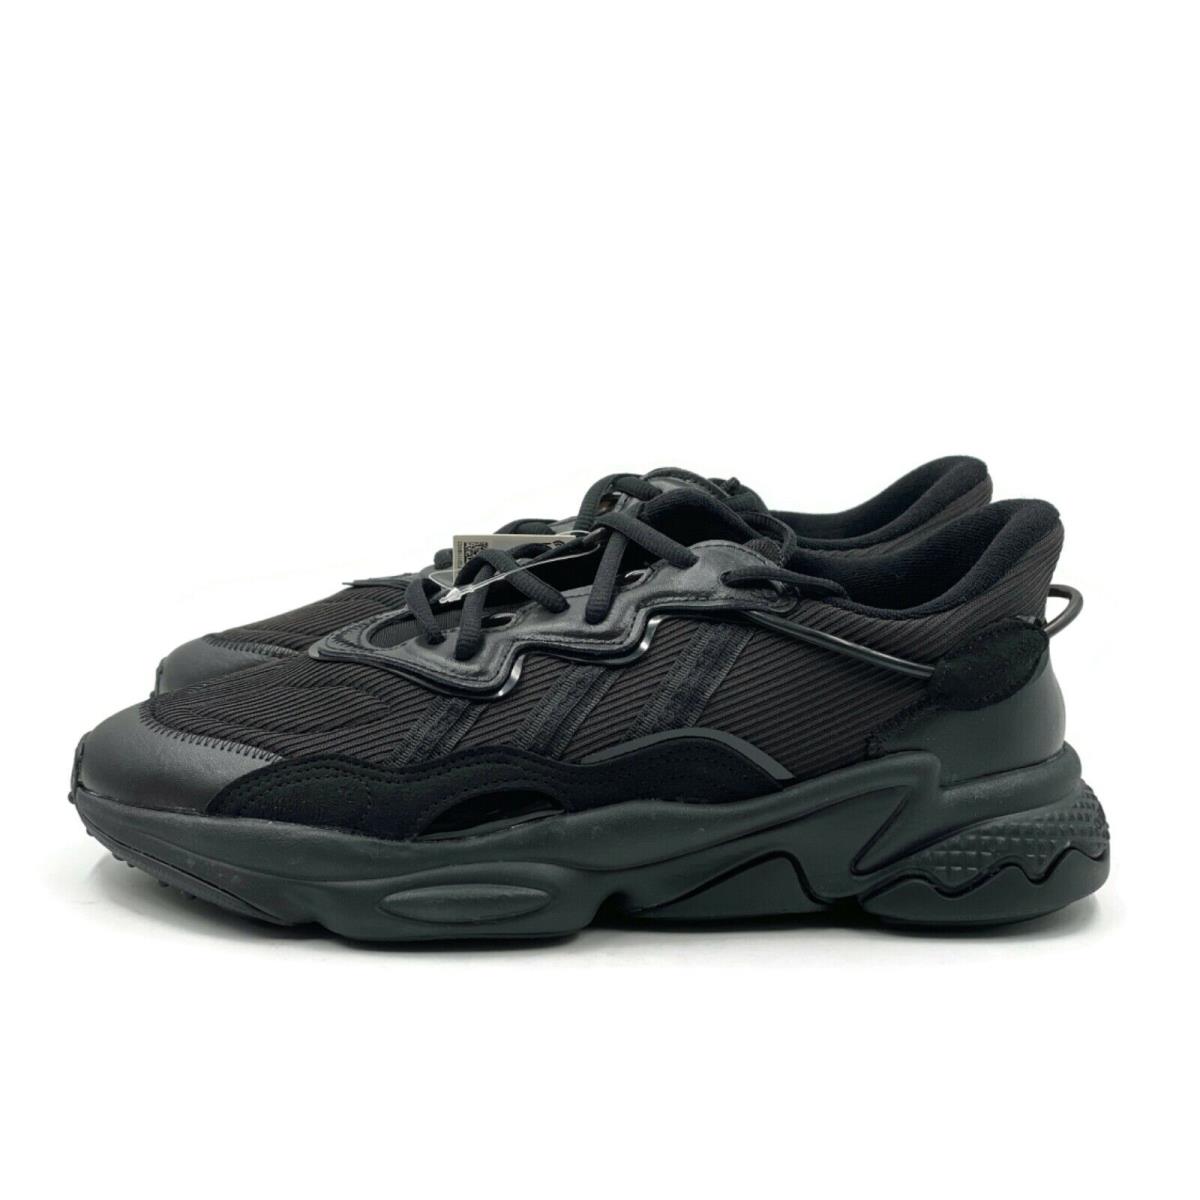 Adidas shoes Ozweego - Black 4